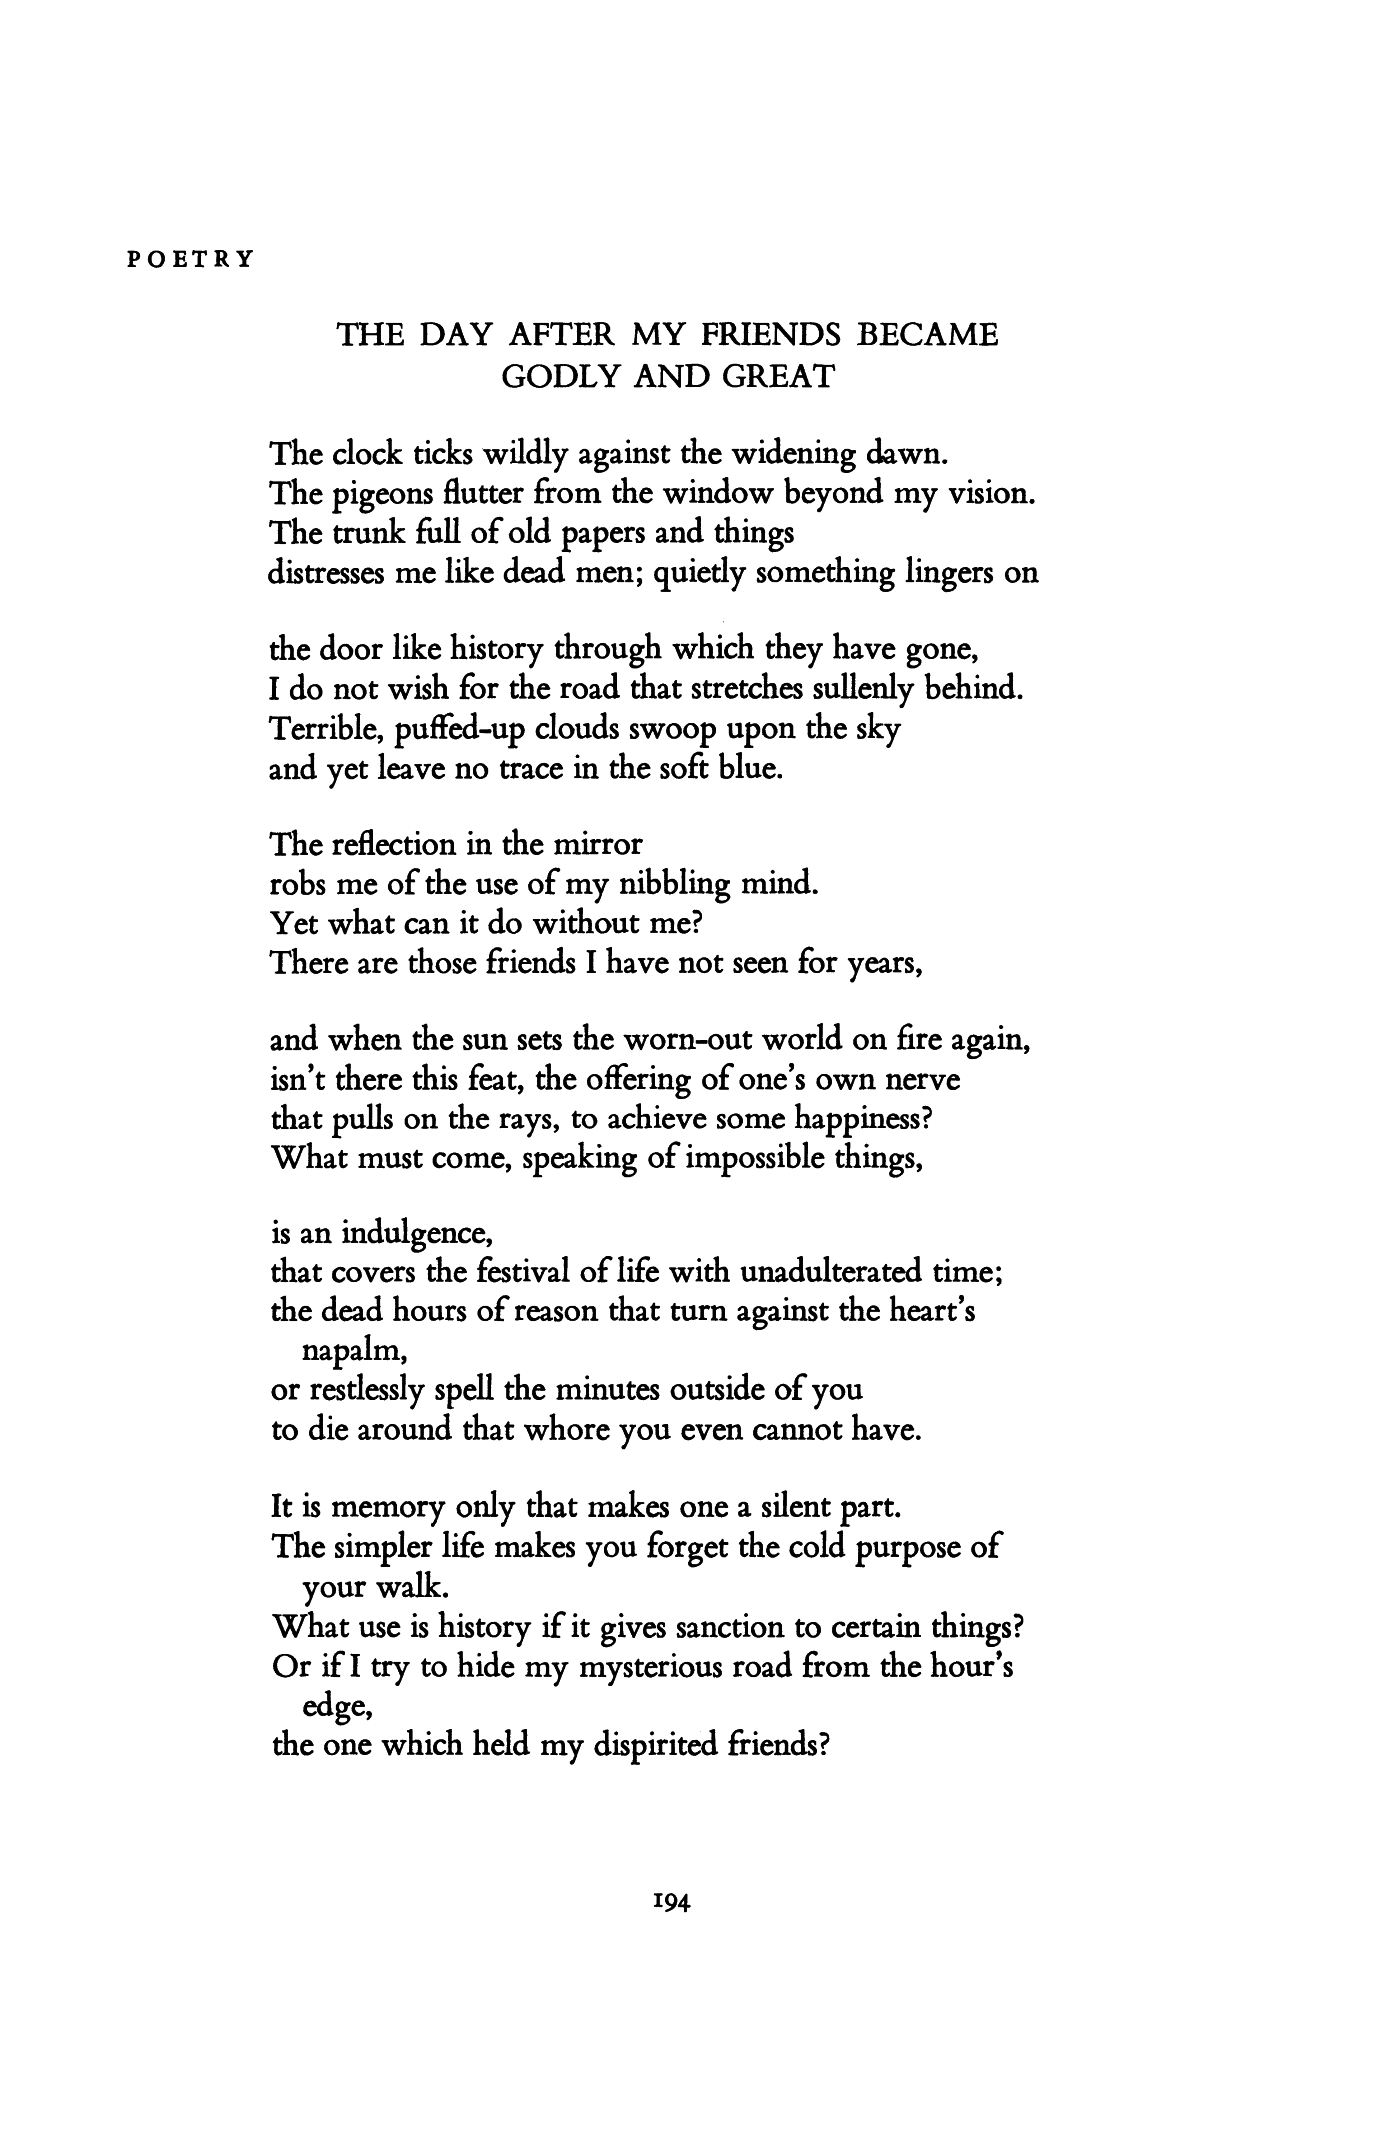 friendship poems for men